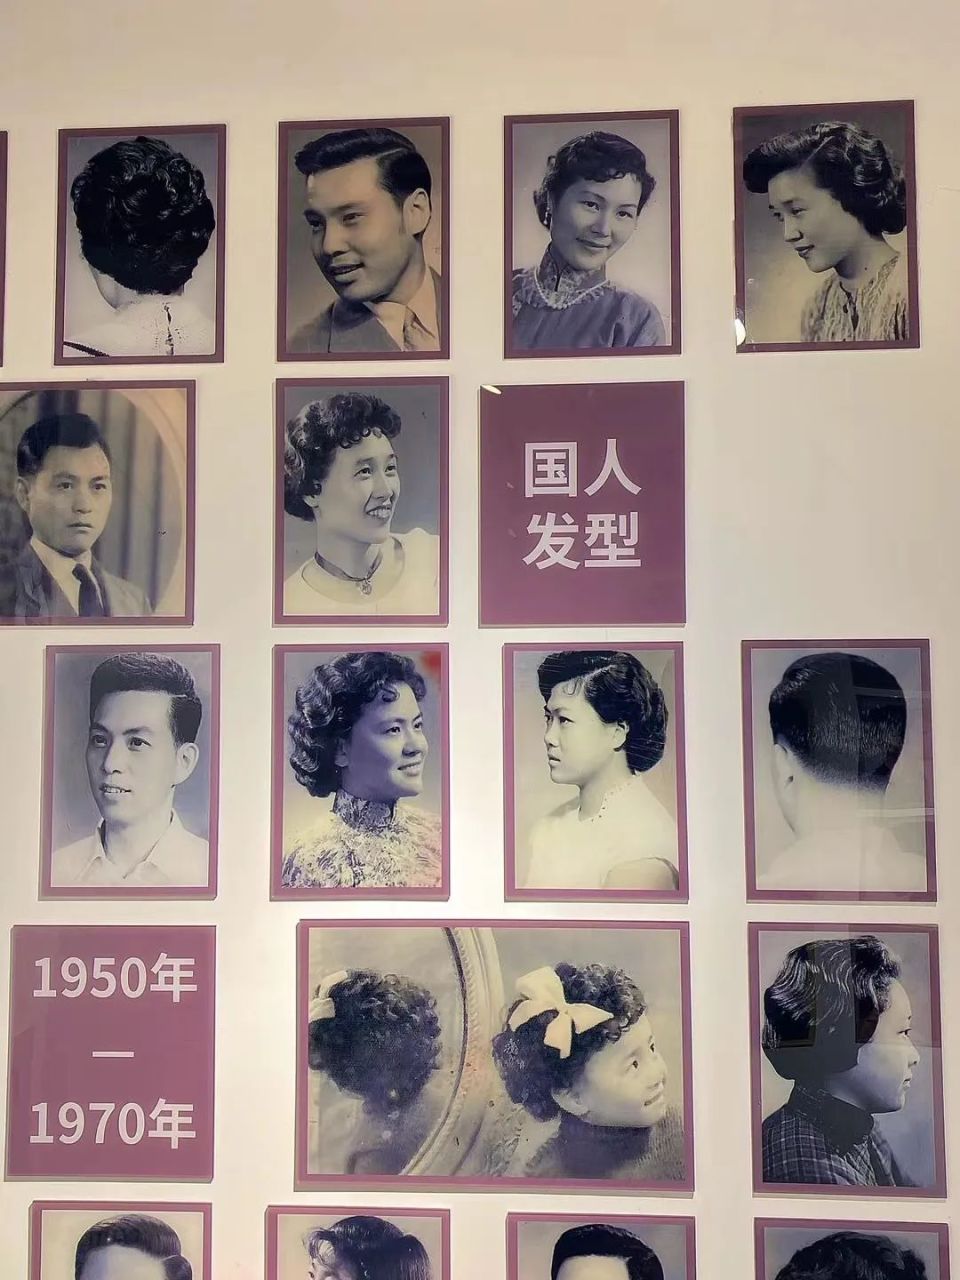 的美国理发椅,更把流行于老上海的国际潮流发型和精湛的技艺带至京城